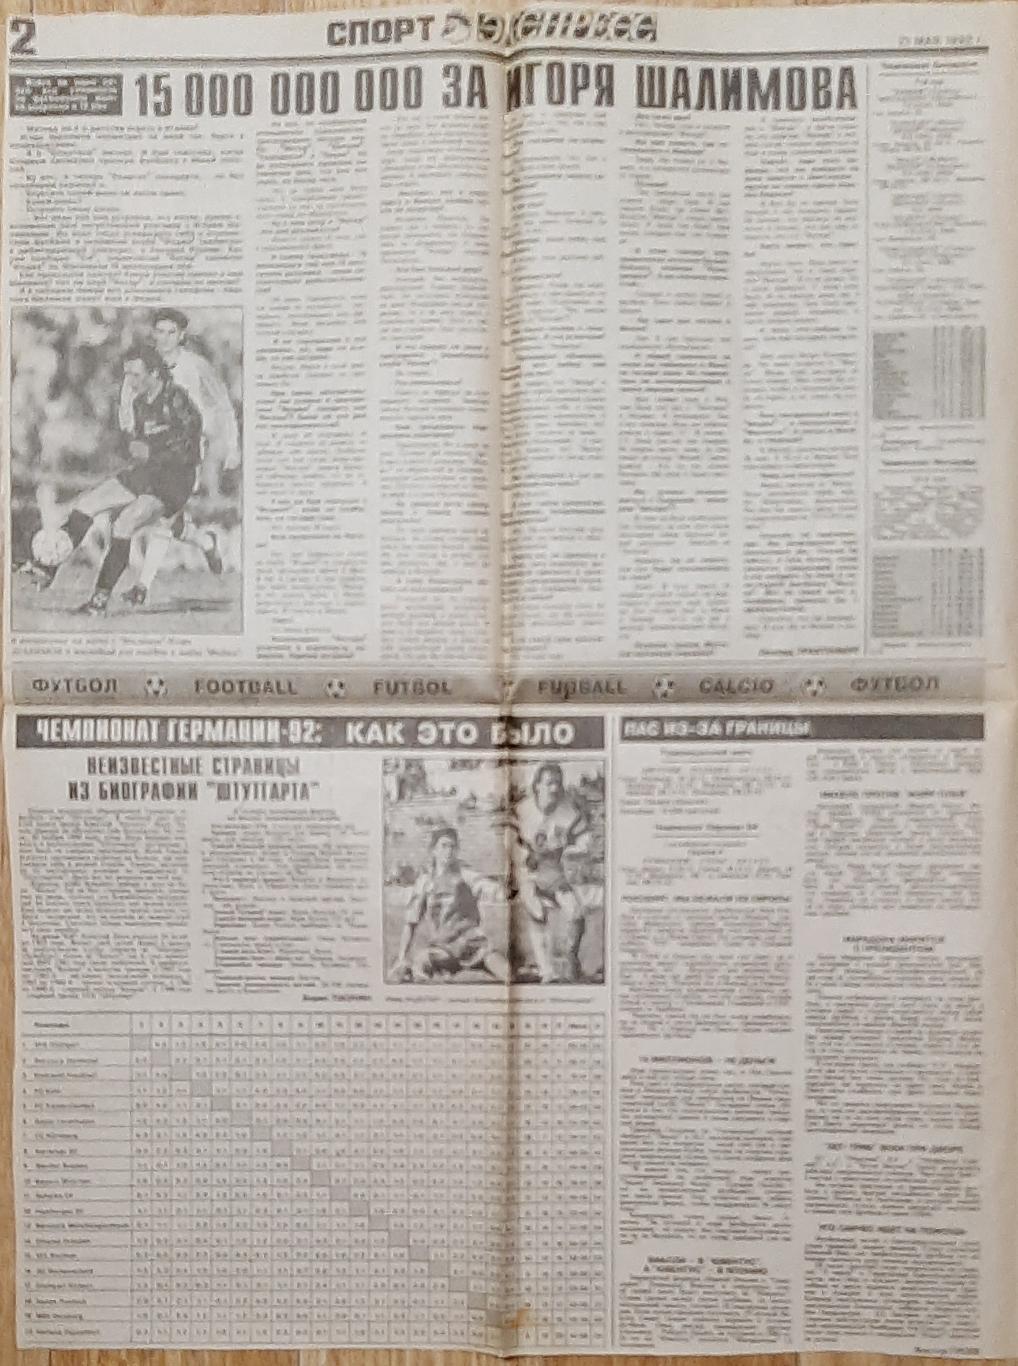 Вирізка з газети Спорт експрес #96 (21 травня 1992) 3